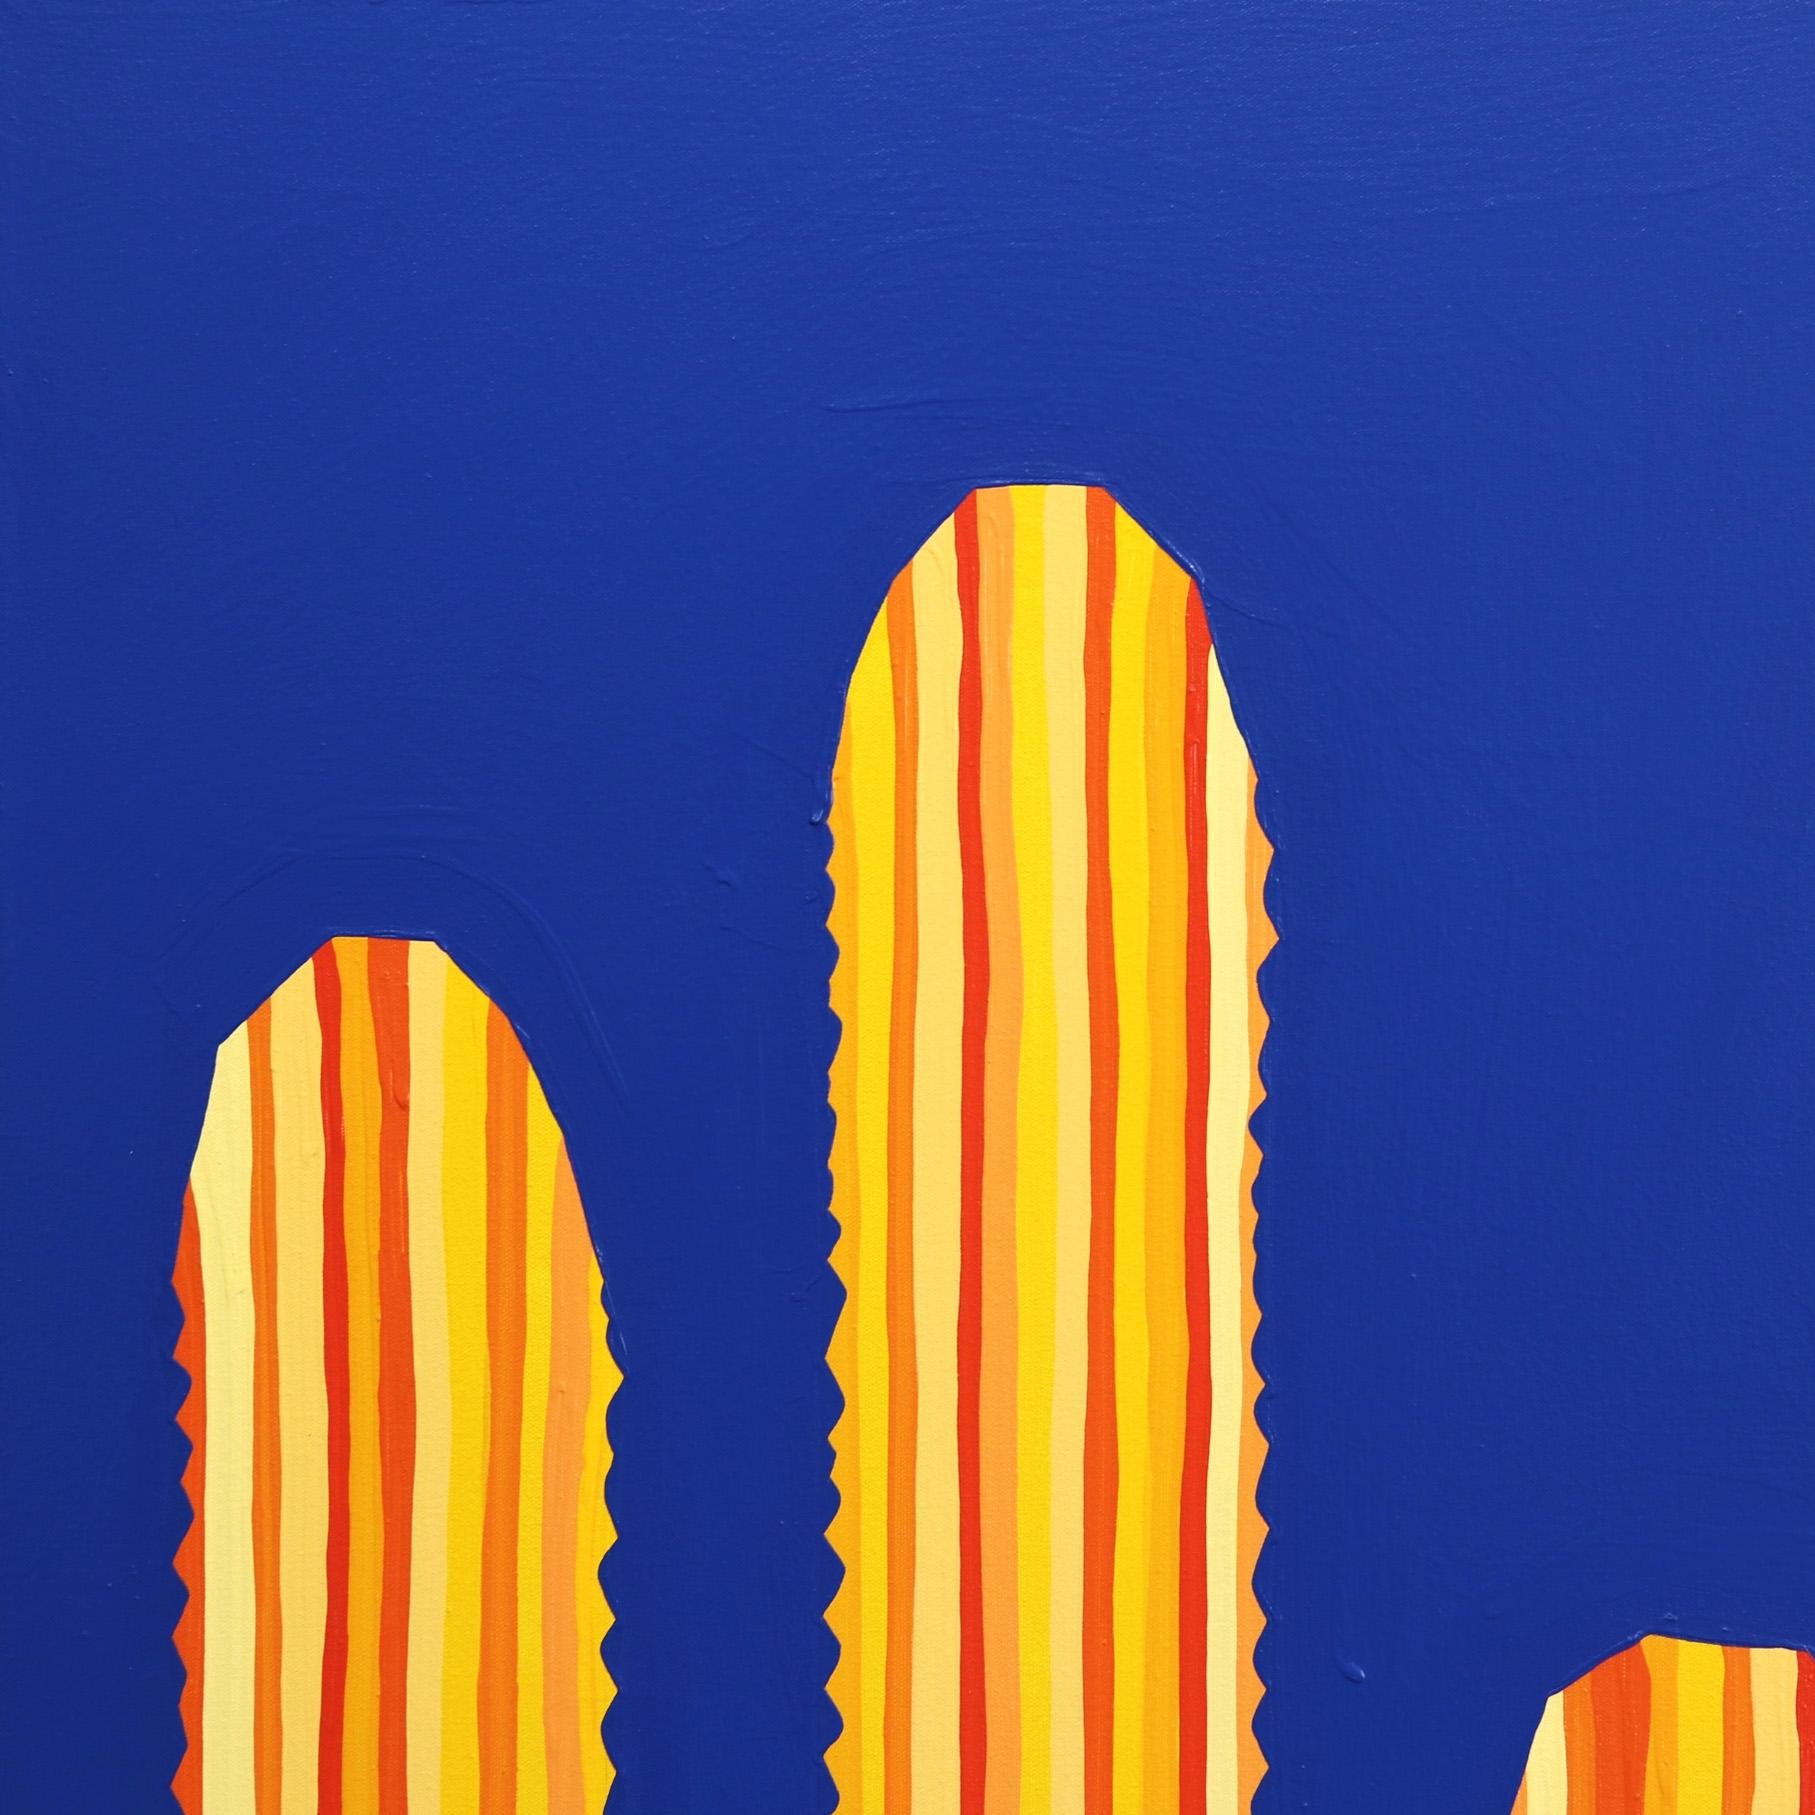 Limelight - Großes überdimensionales minimalistisches gelb gestreiftes Kaktus auf blauem Kunstwerk (Minimalistisch), Painting, von Will Beger